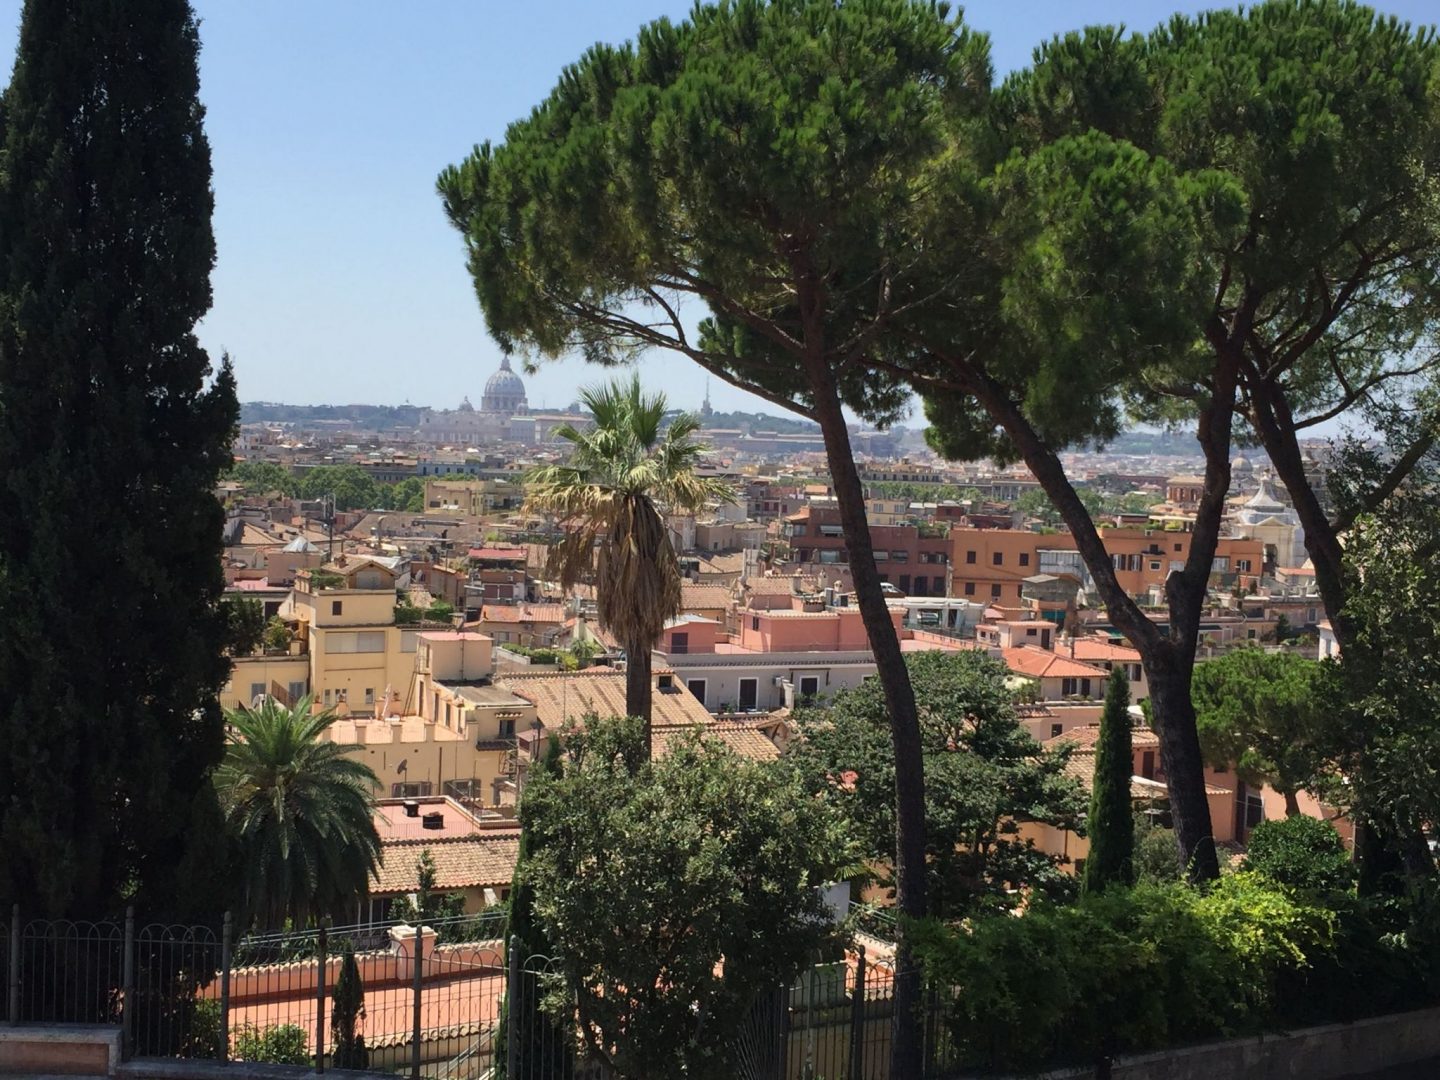 Views from Villa Borghese Gardens, Rome